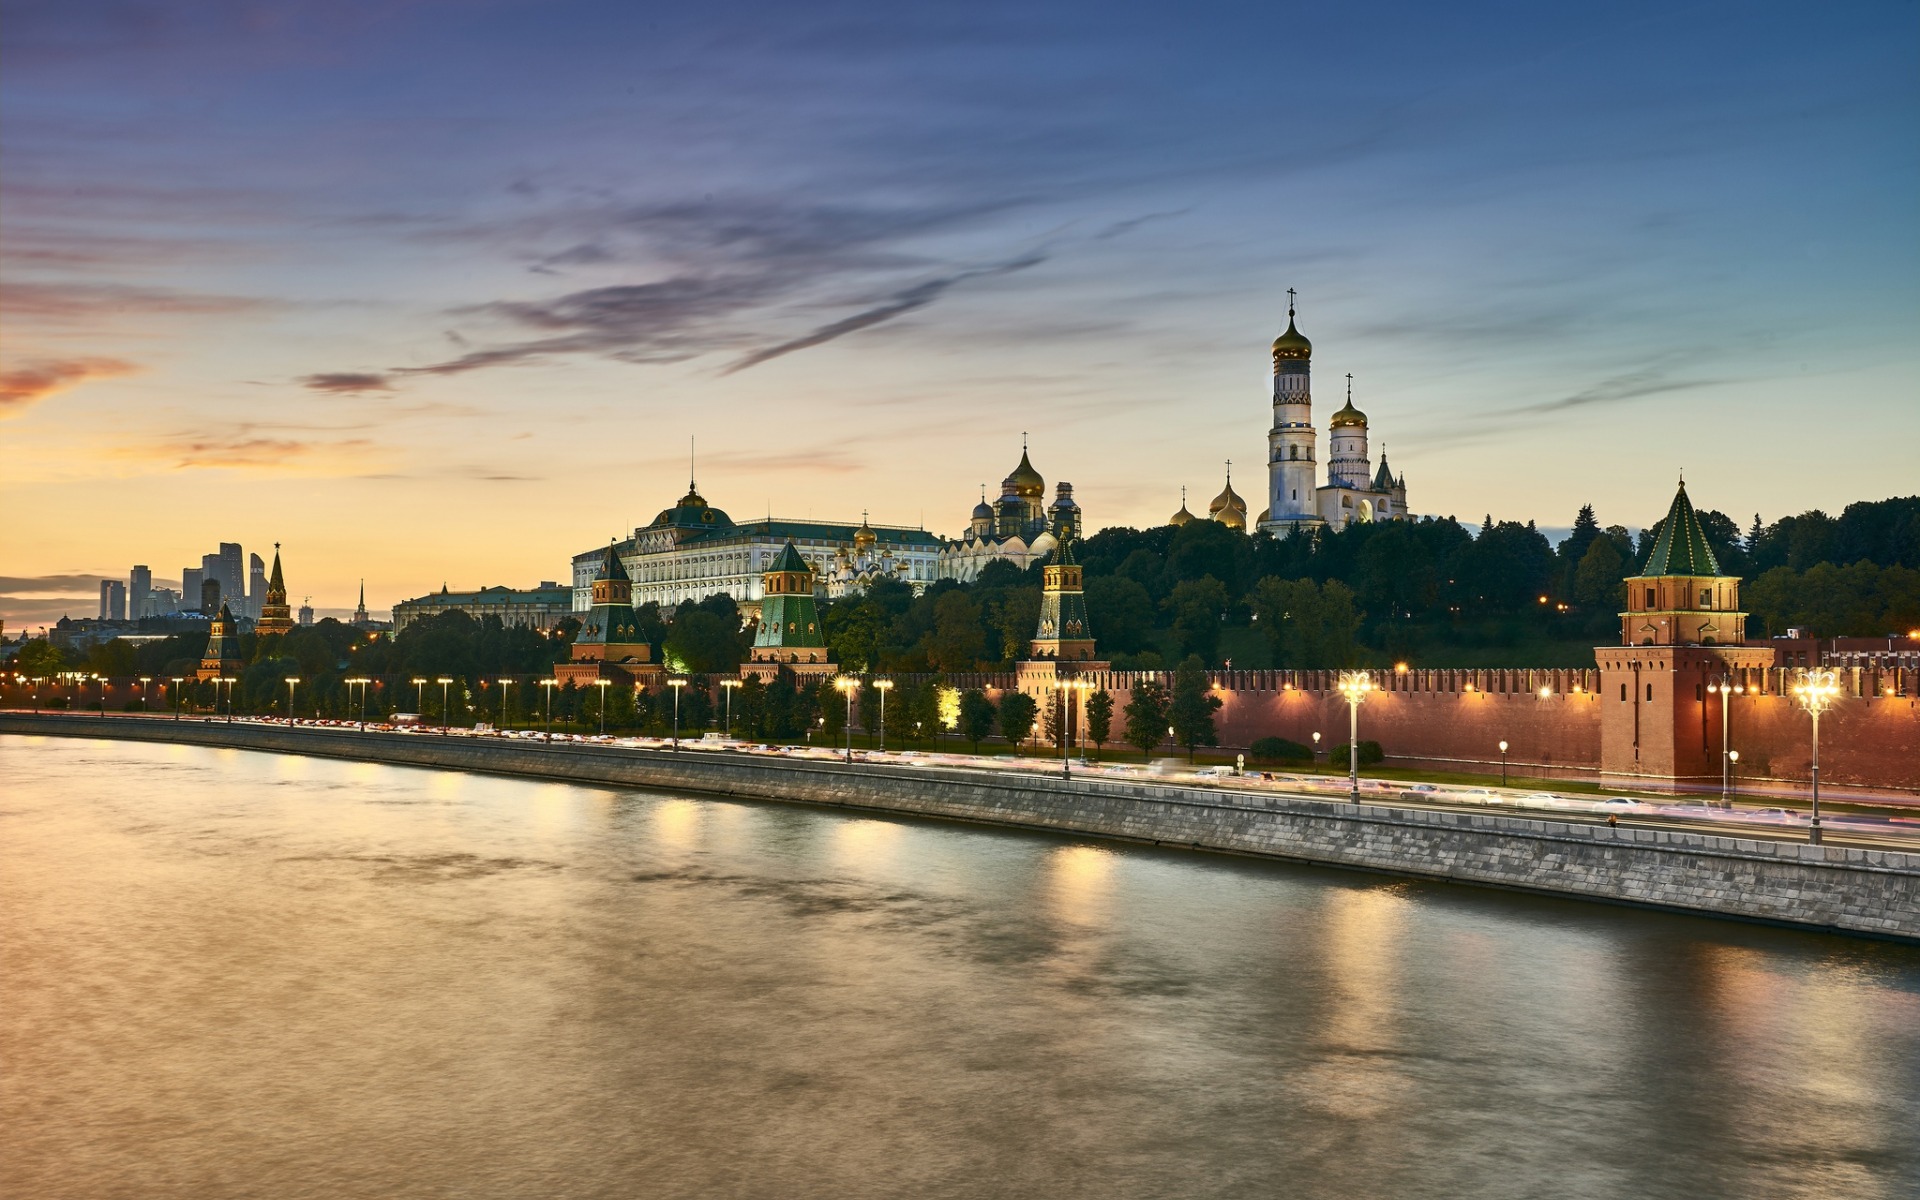 ダウンロード画像 モスクワ ロシア 夜 クレムリン モスクワ川 盛土 ロシア連邦 ランドマーク 画面の解像度 19x10 壁紙 デスクトップ上